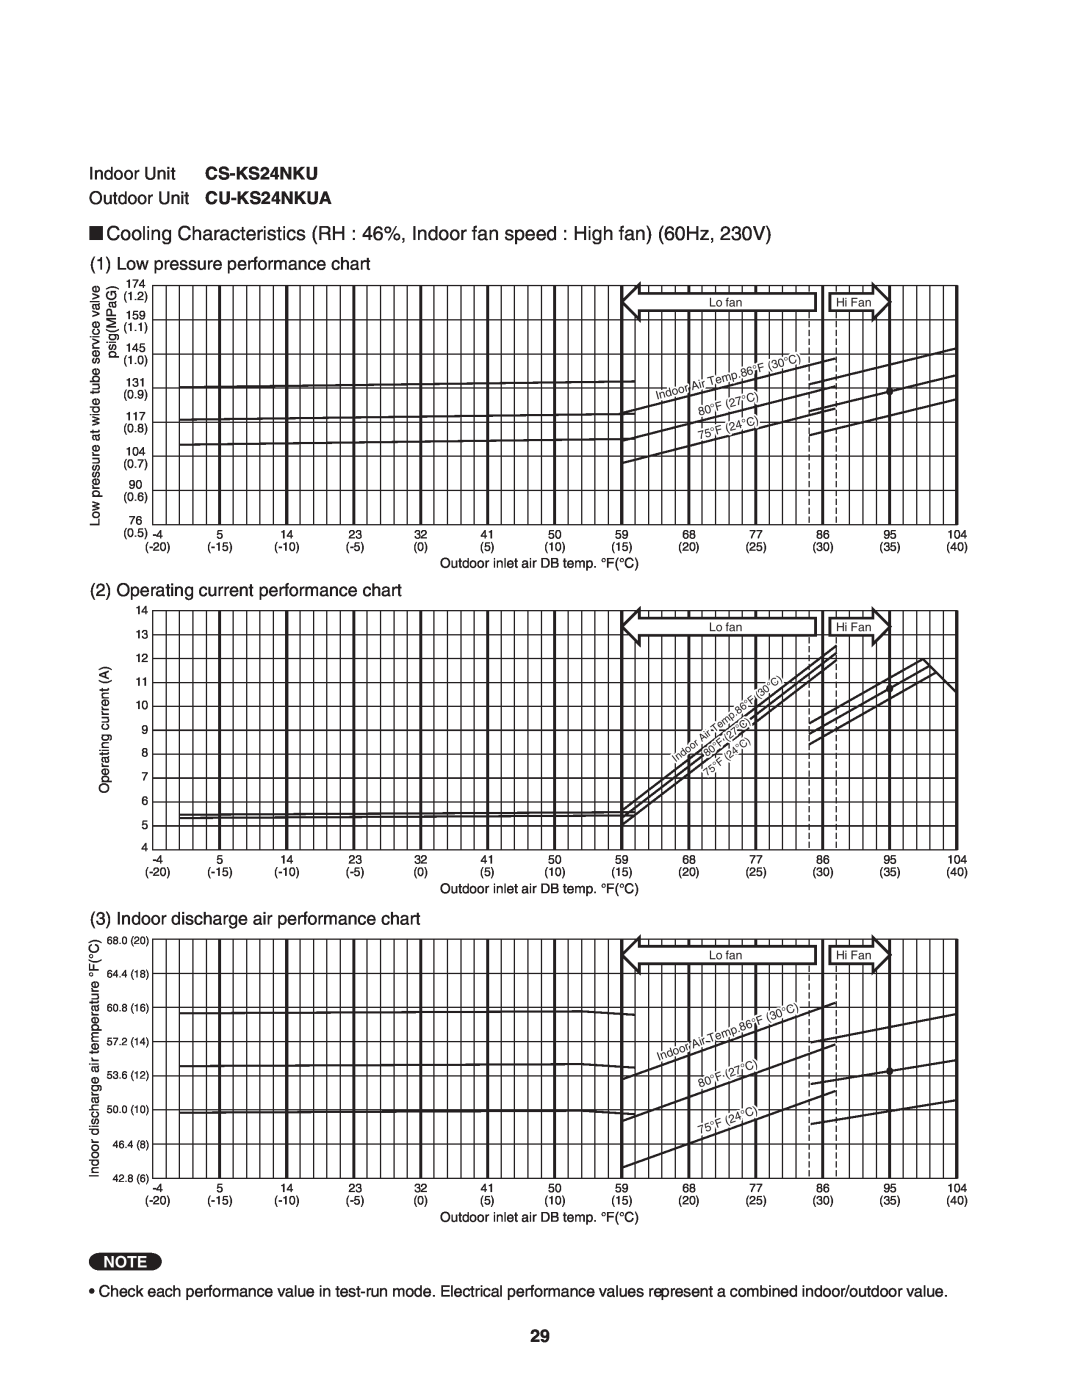 Panasonic service manual Indoor Unit CS-KS24NKU Outdoor Unit CU-KS24NKUA, Low pressure performance chart 